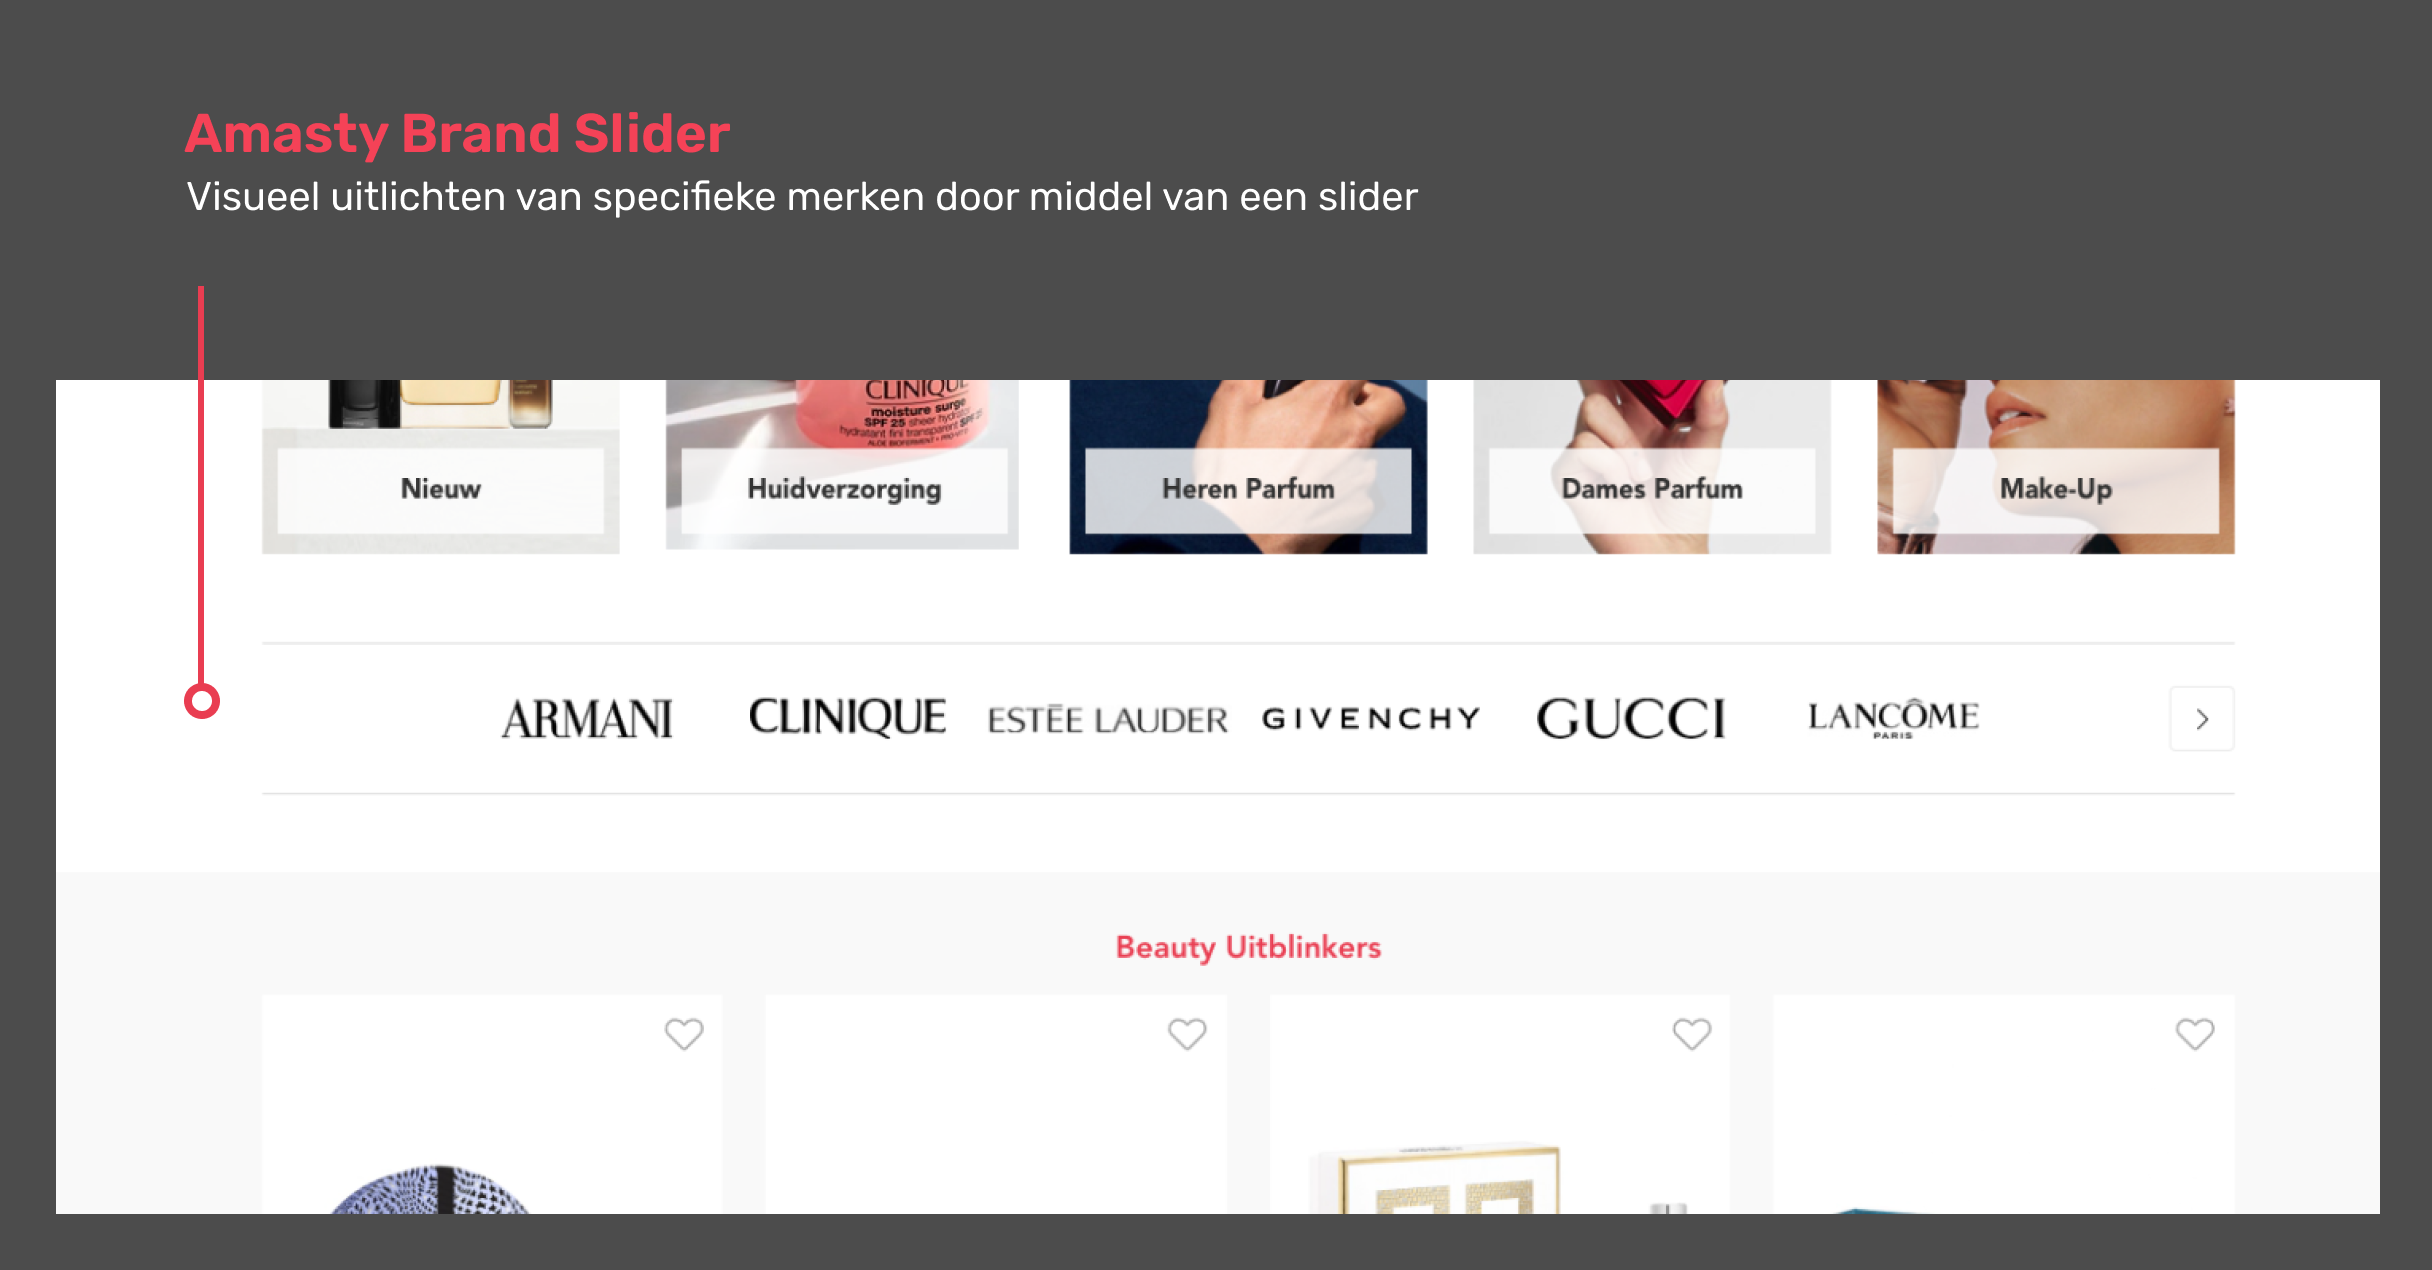 Amasty Brand Slider: Visueel uitlichten van specifieke merken door middel van een slider